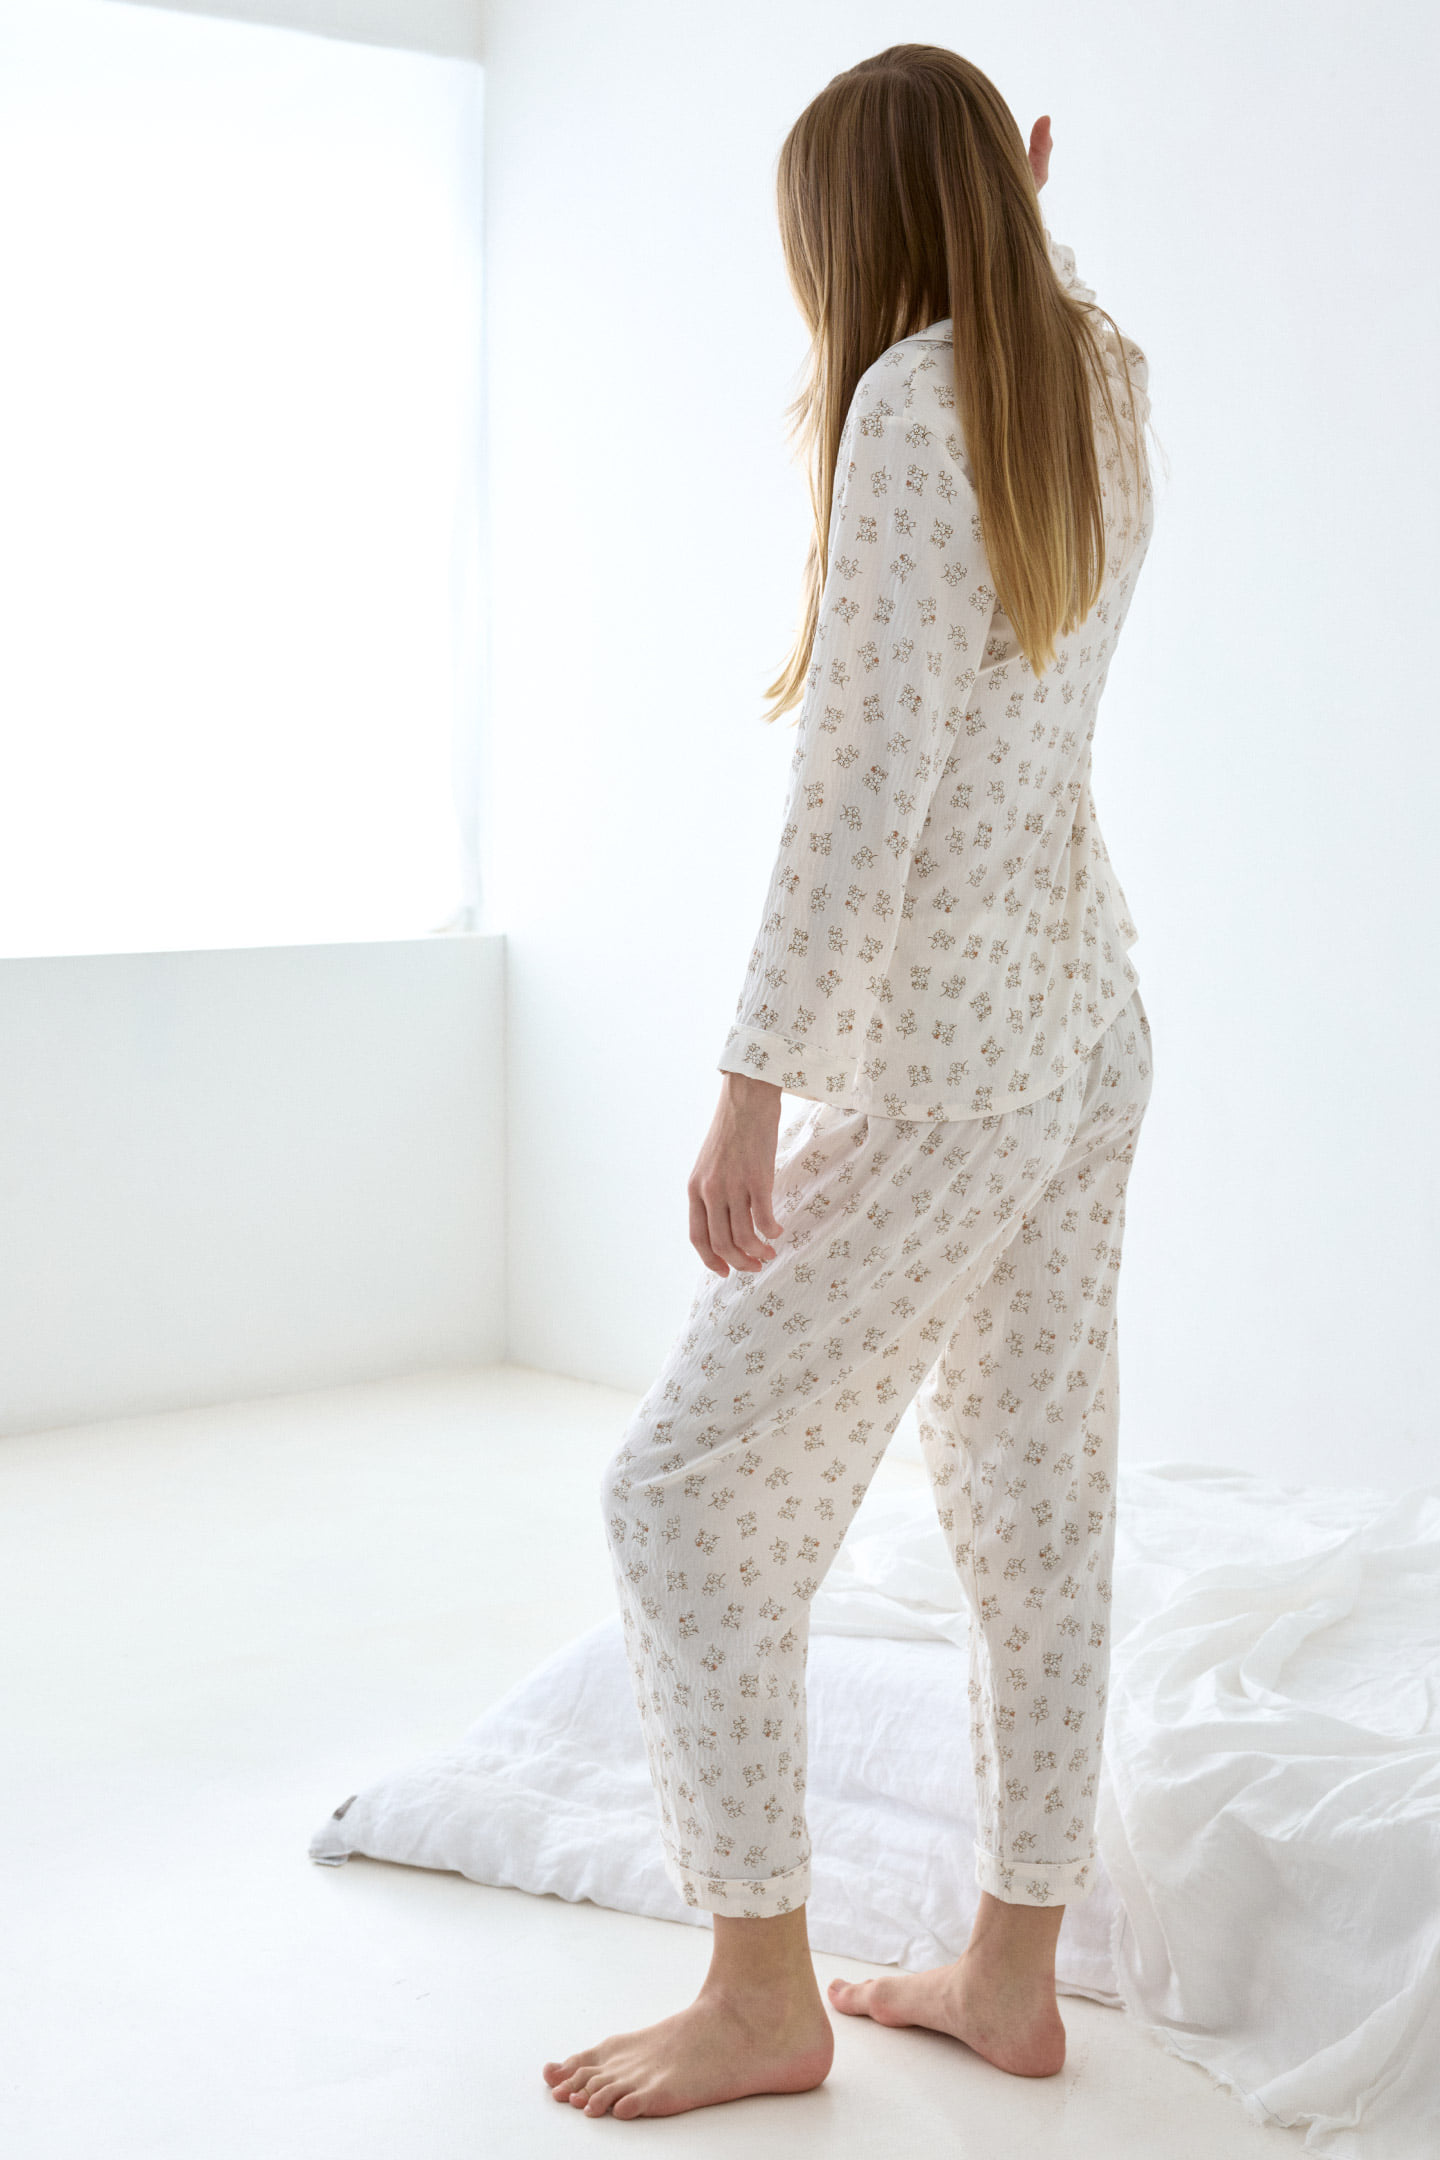 다라 플라워 홈웨어 여성 잠옷 세트 파자마